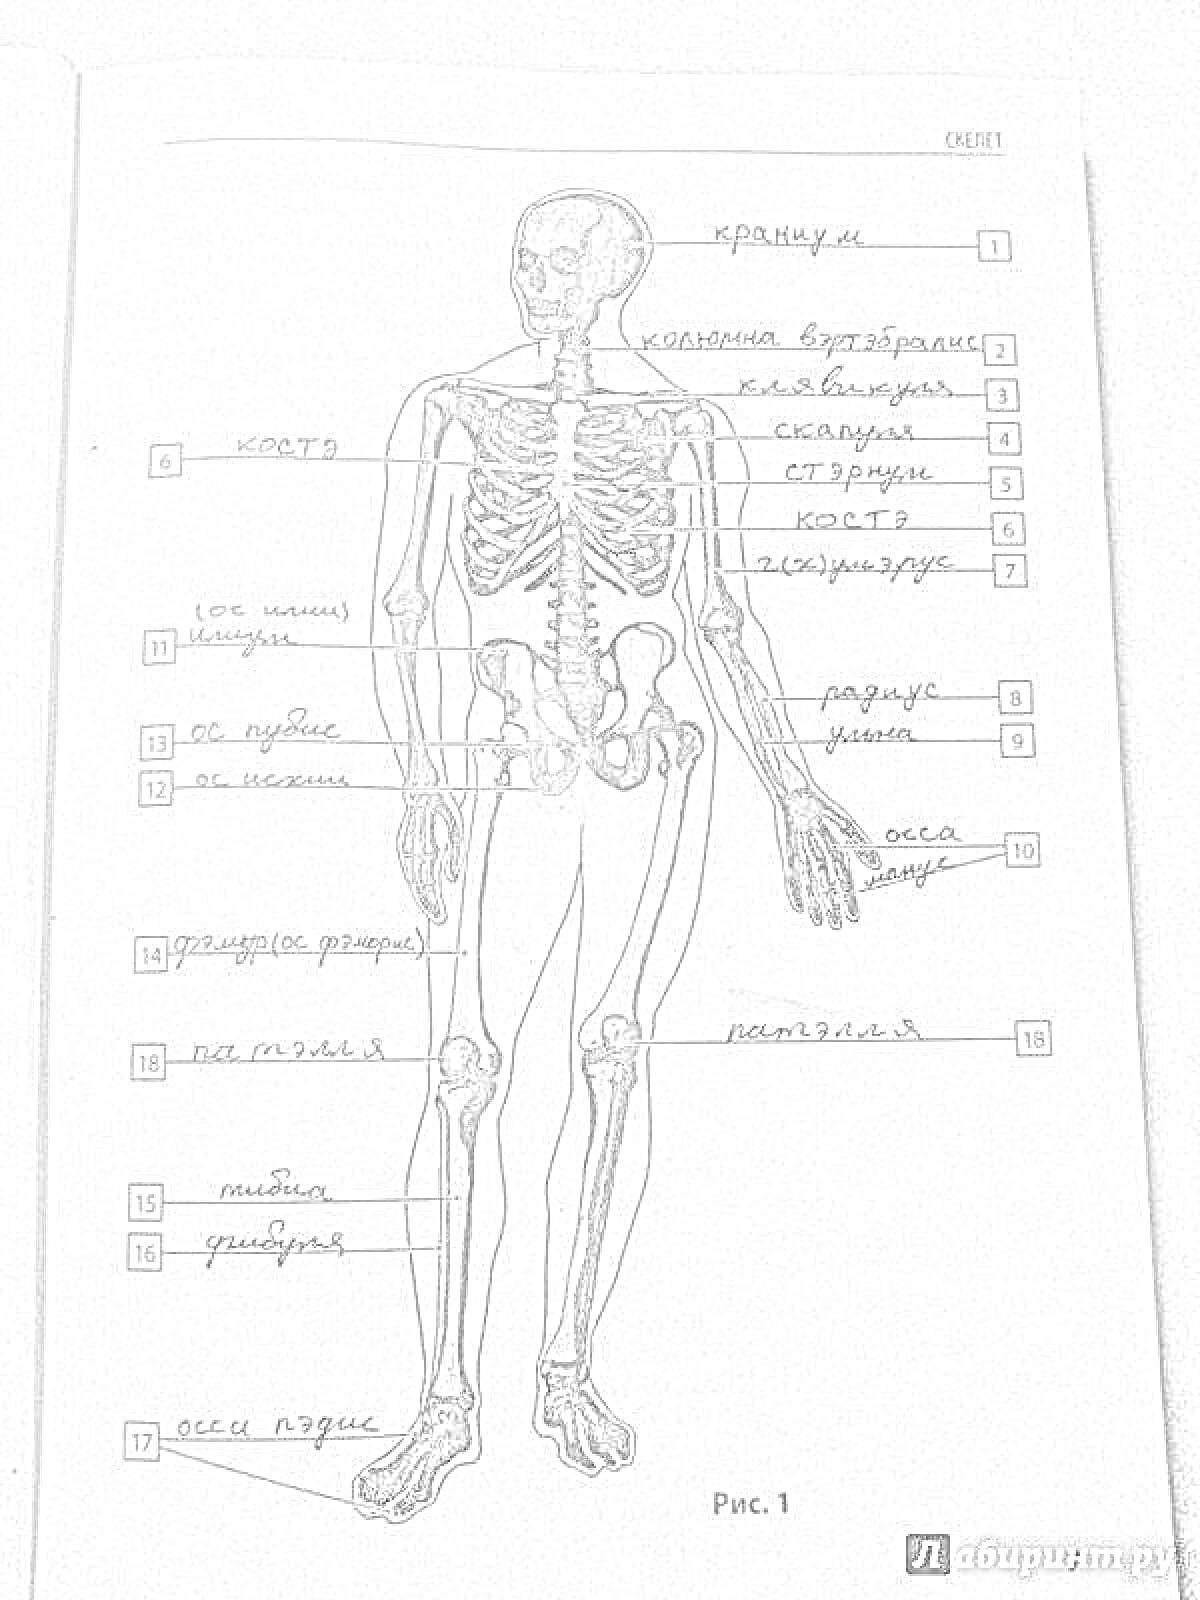 Скелет человека с аннотациями. Все элементы: череп, ключица, грудина, ребра, позвоночник, кость плеча, локтевая кость, локоть, кость предплечья, кости запястья, таз, бедренная кость, надколенник, колено, большеберцовая кость, малоберцовая кость, кости сту